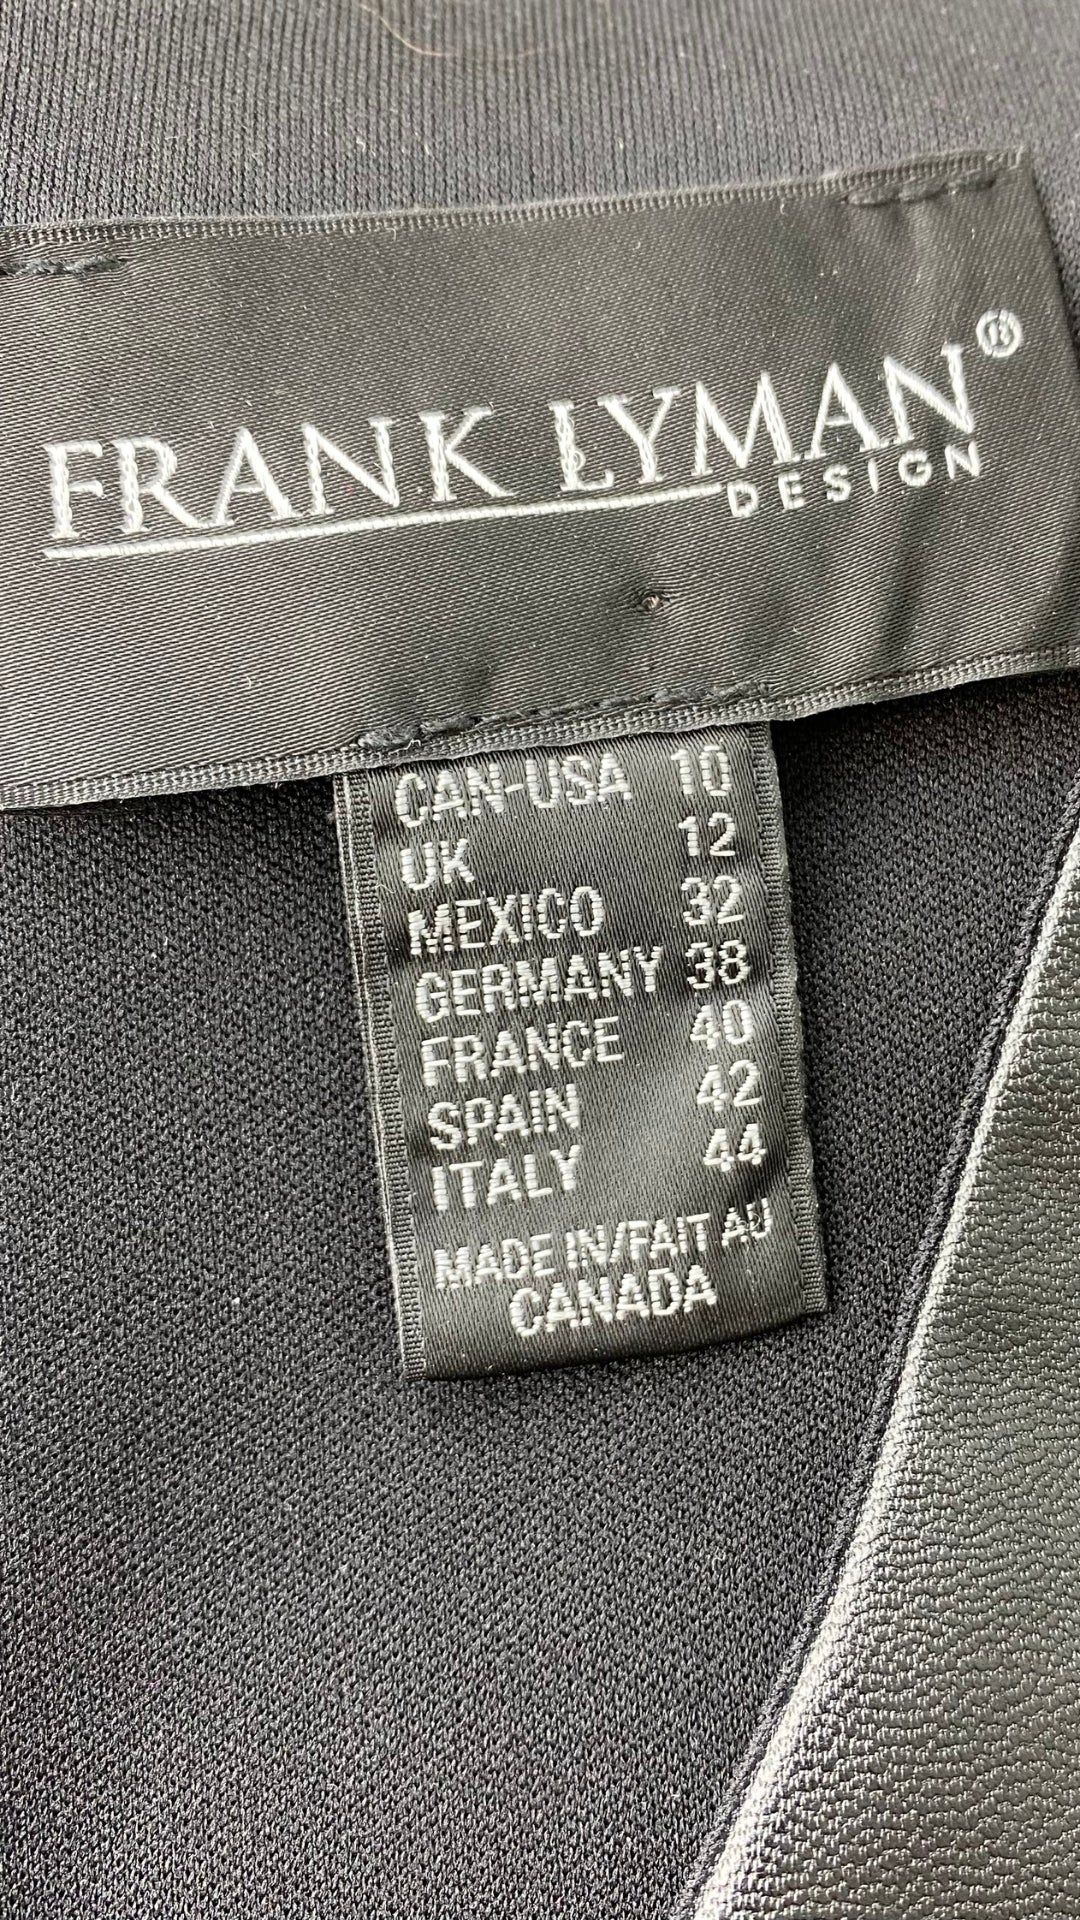 Robe Frank Lyman drapée noire et faux cuir. Vue de l'étiquette de marque et taille.